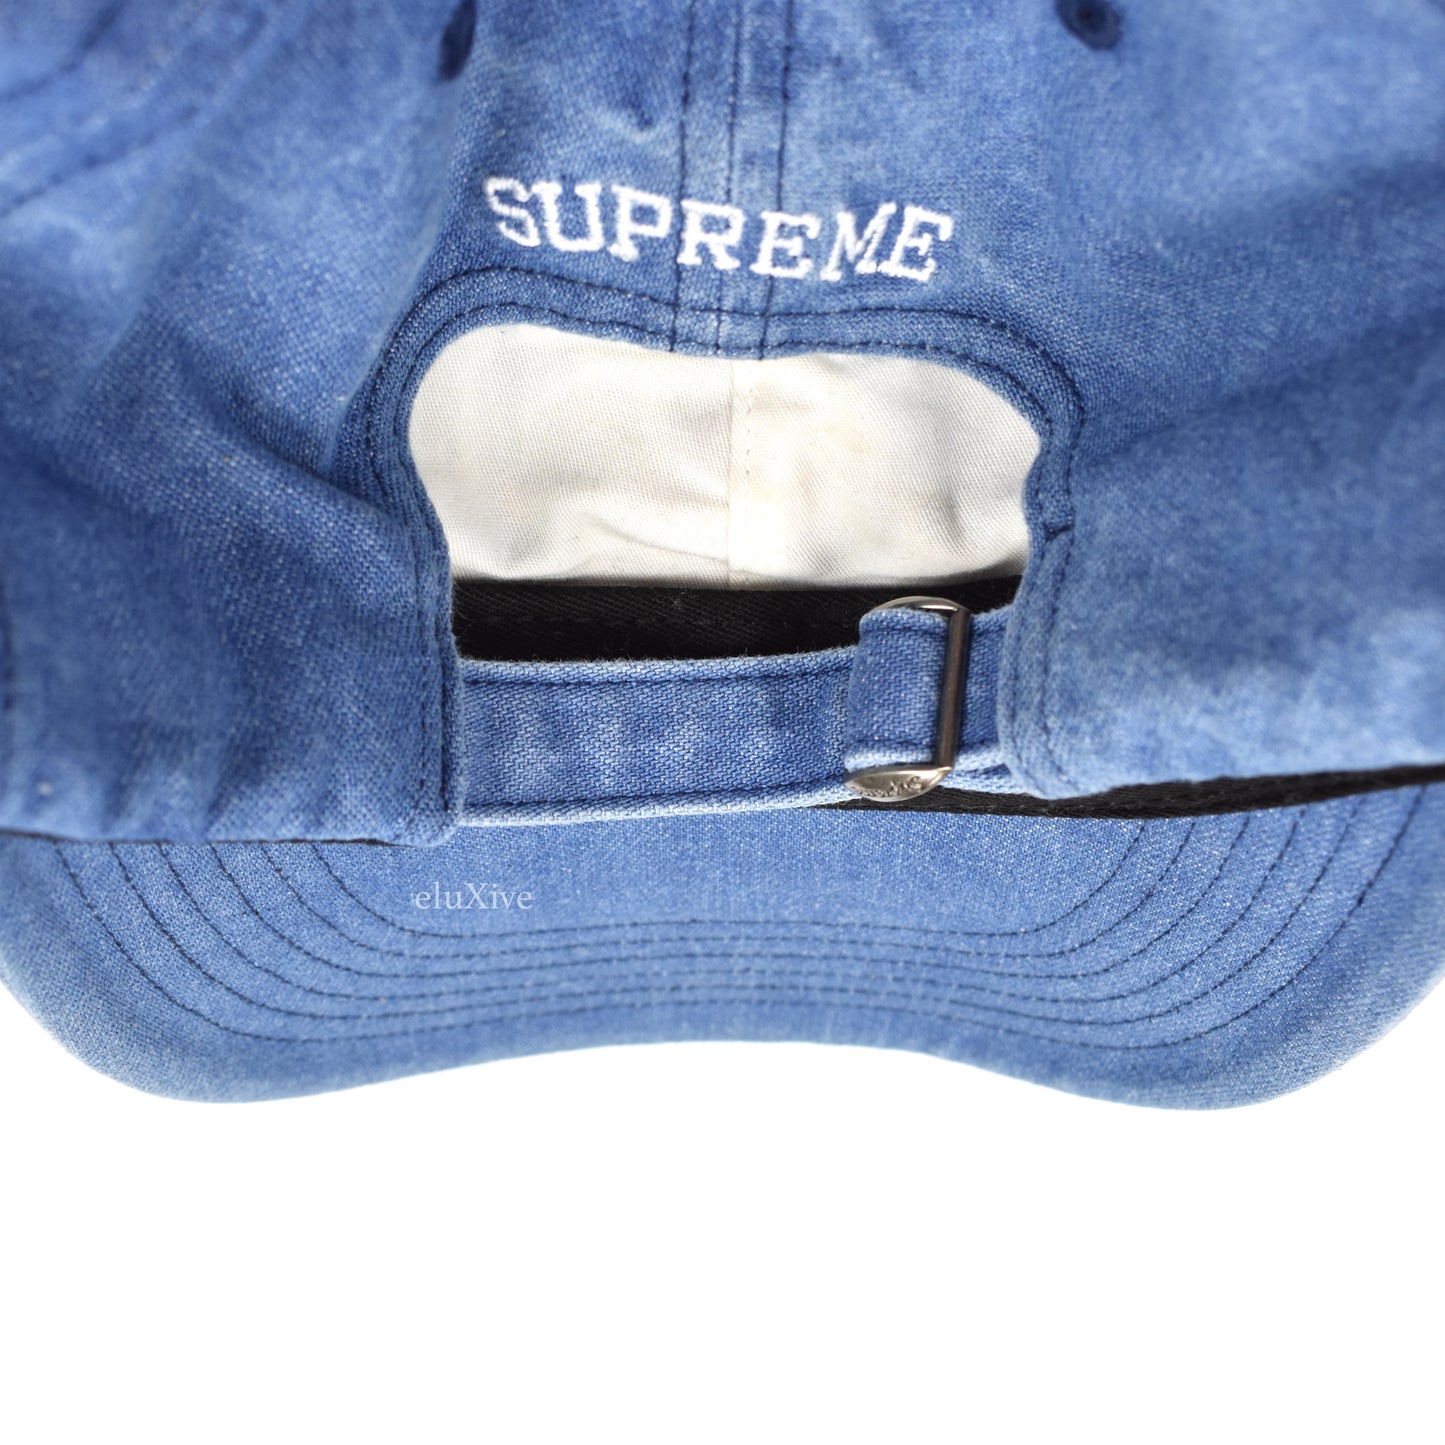 Supreme - Denim Multi Color Logo Hat (Blue)